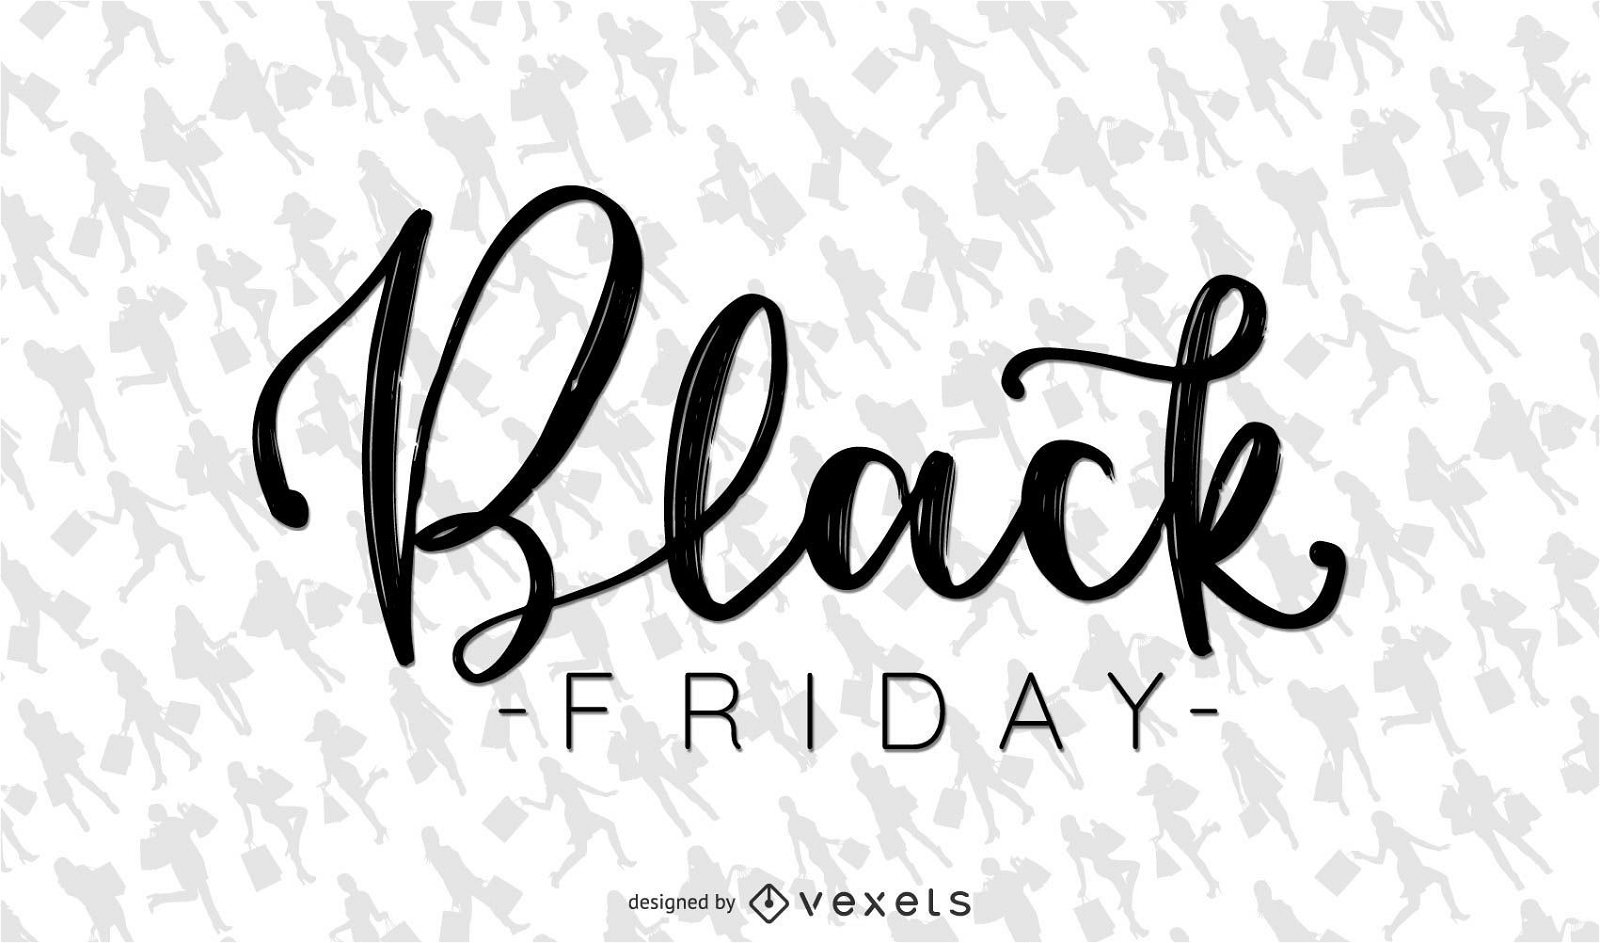 Black Friday shopping lettering